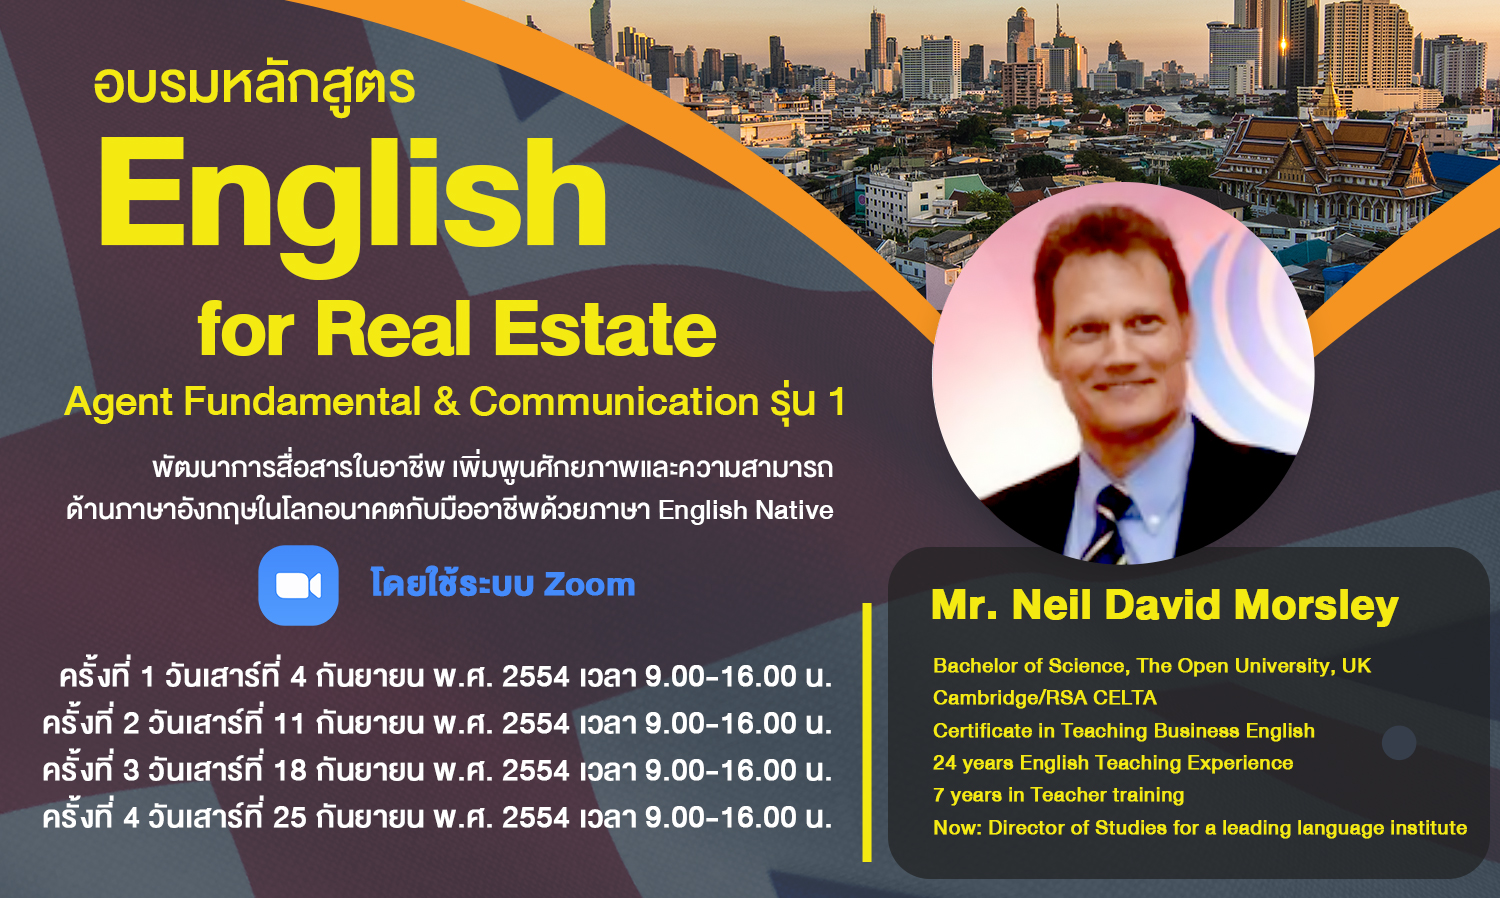  อบรมหลักสูตร English for Real Estate Agent Fundamental & Communication รุ่น 1